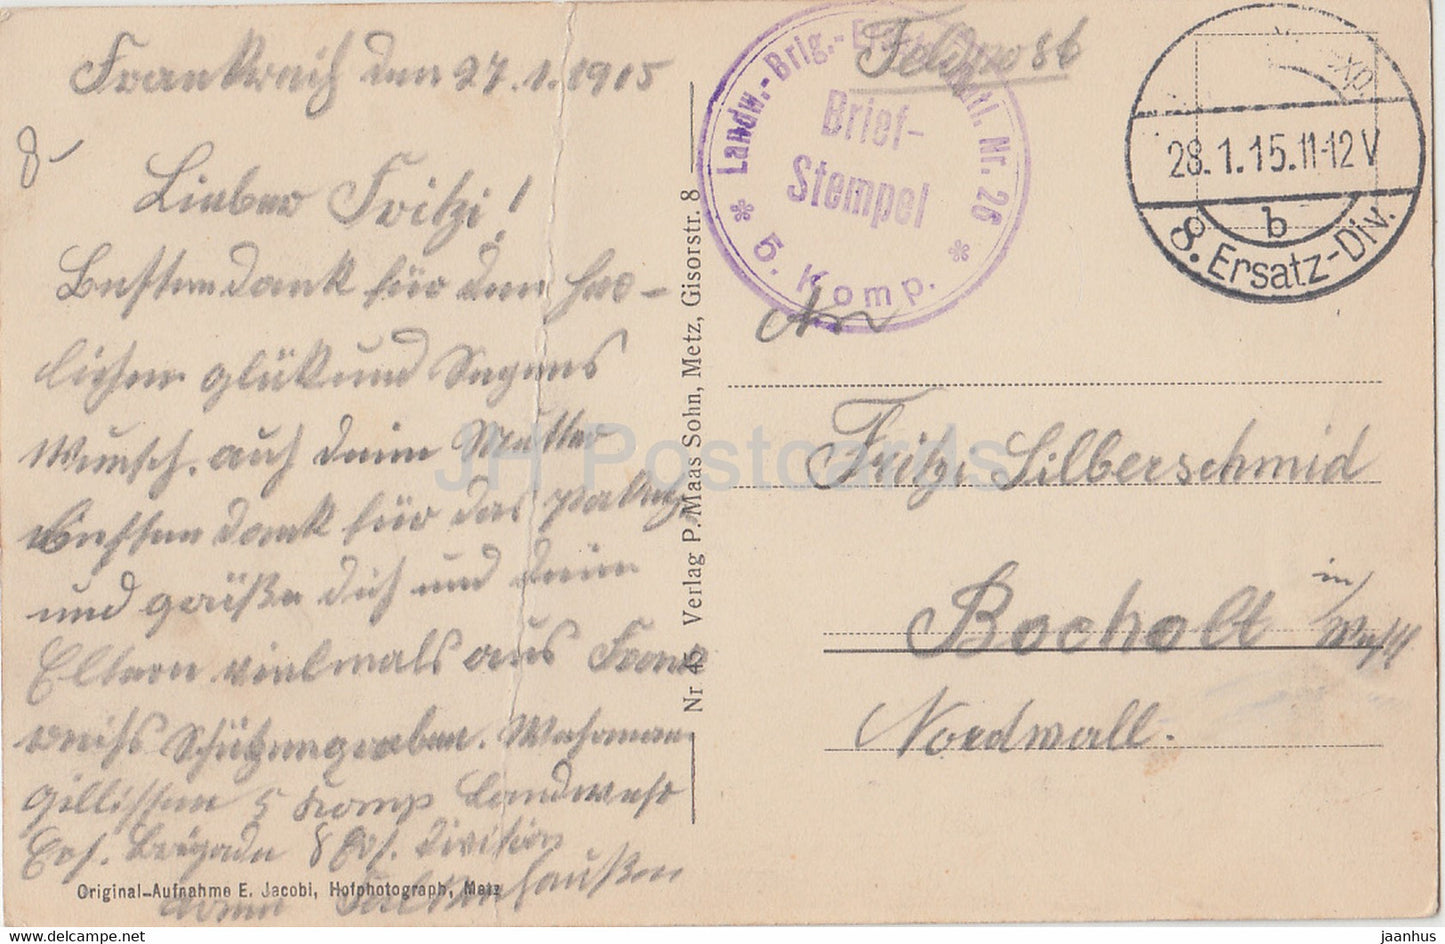 Schlachtfeld Buzy zwischen Conflans u Verdun - Offenes Heldengrab - Feldpost - old postcard - 1915 - France - used